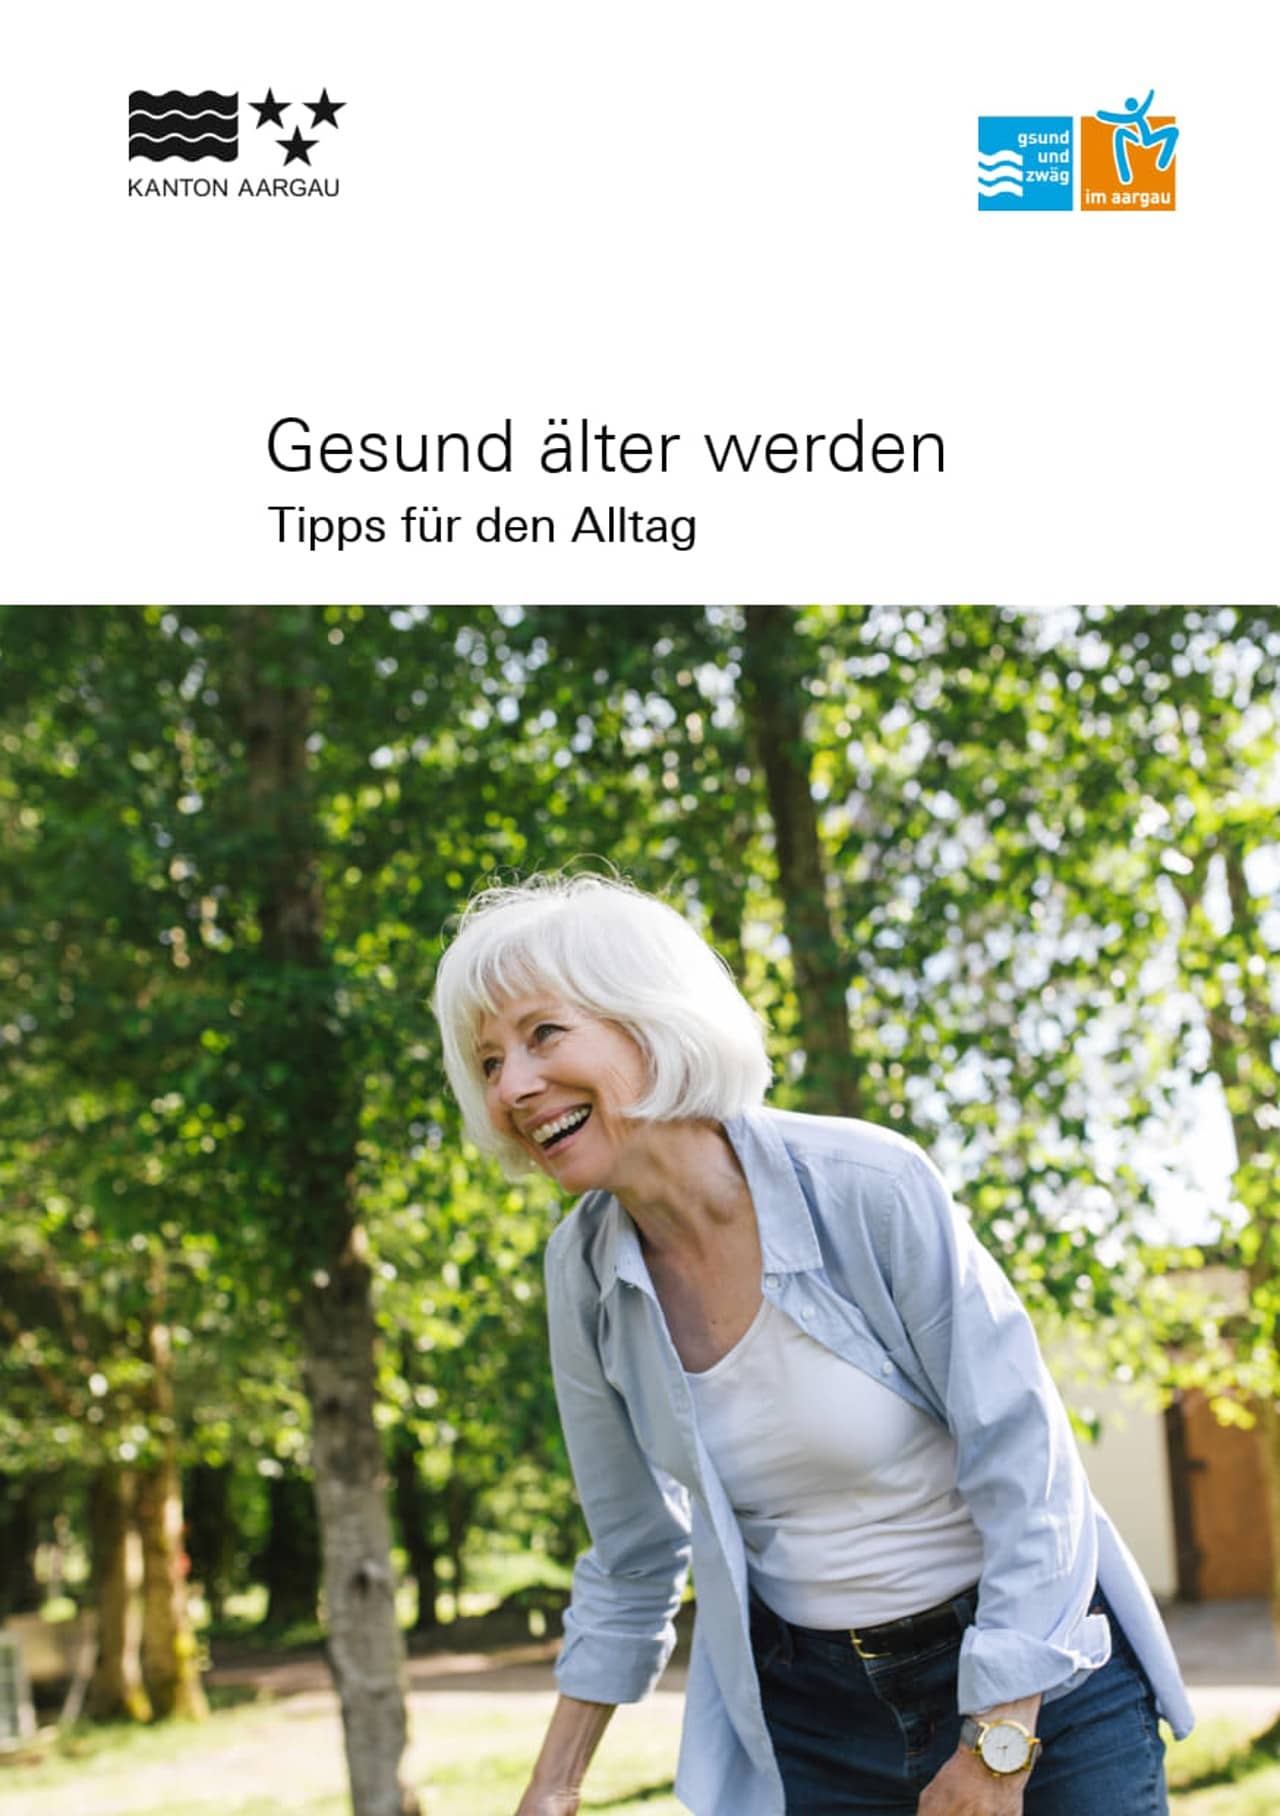 Titelbild Broschüre "gesund älter werden", im unteren Bereich das Bild einer älteren Frau, die lacht im Grünen